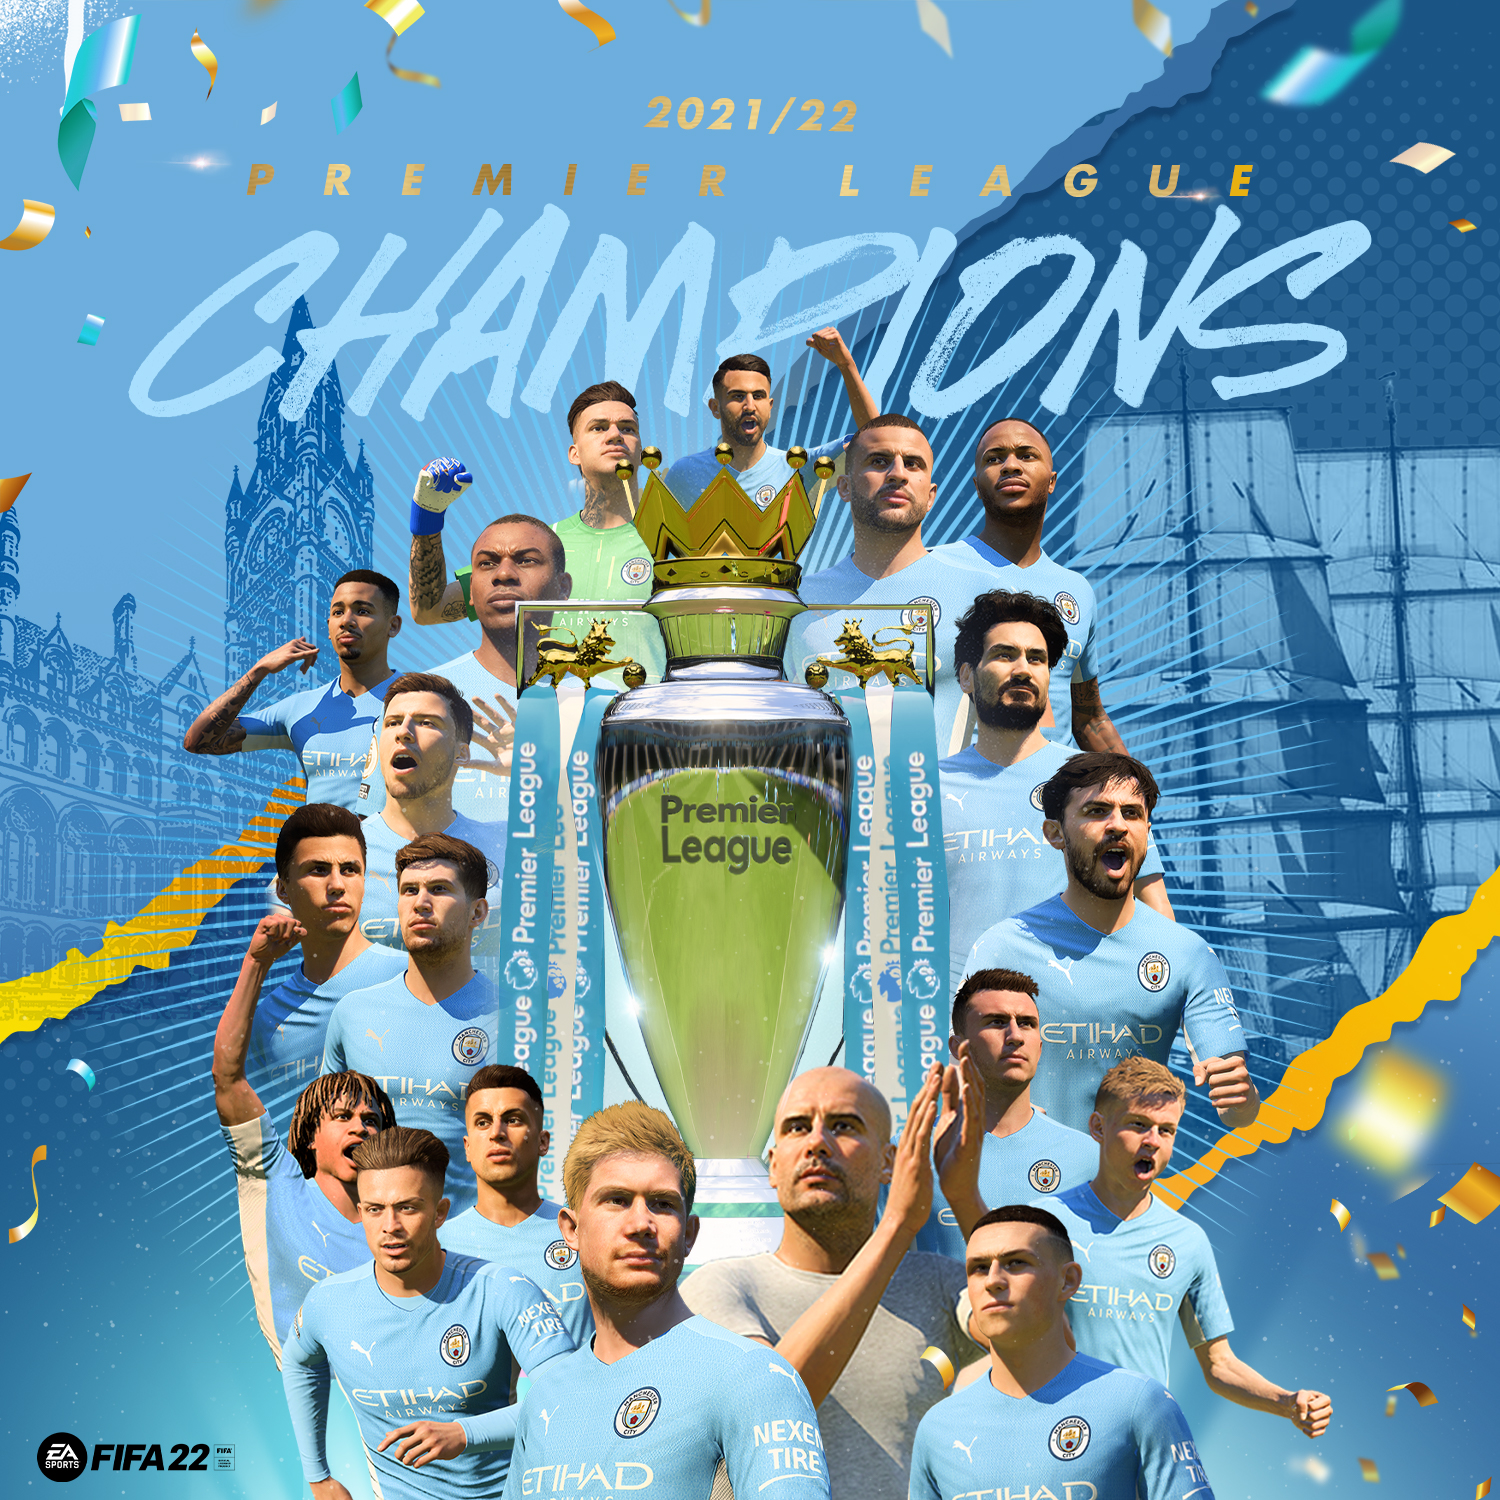 Man City Premier League Champions